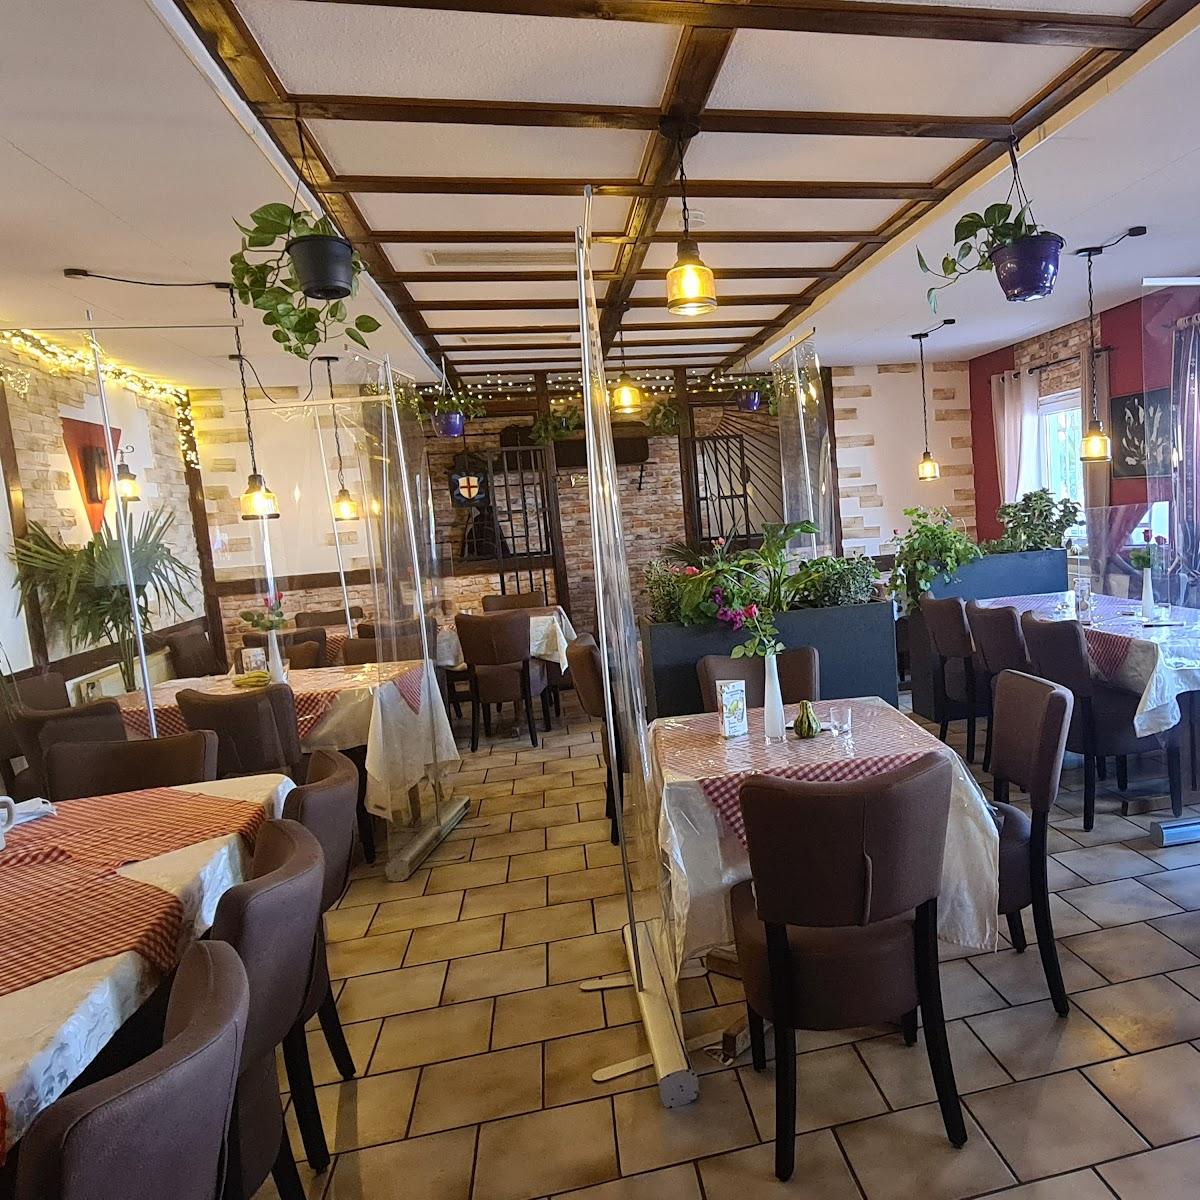 Restaurant "Gaststätte Pizzeria Wonnhalde" in Freiburg im Breisgau